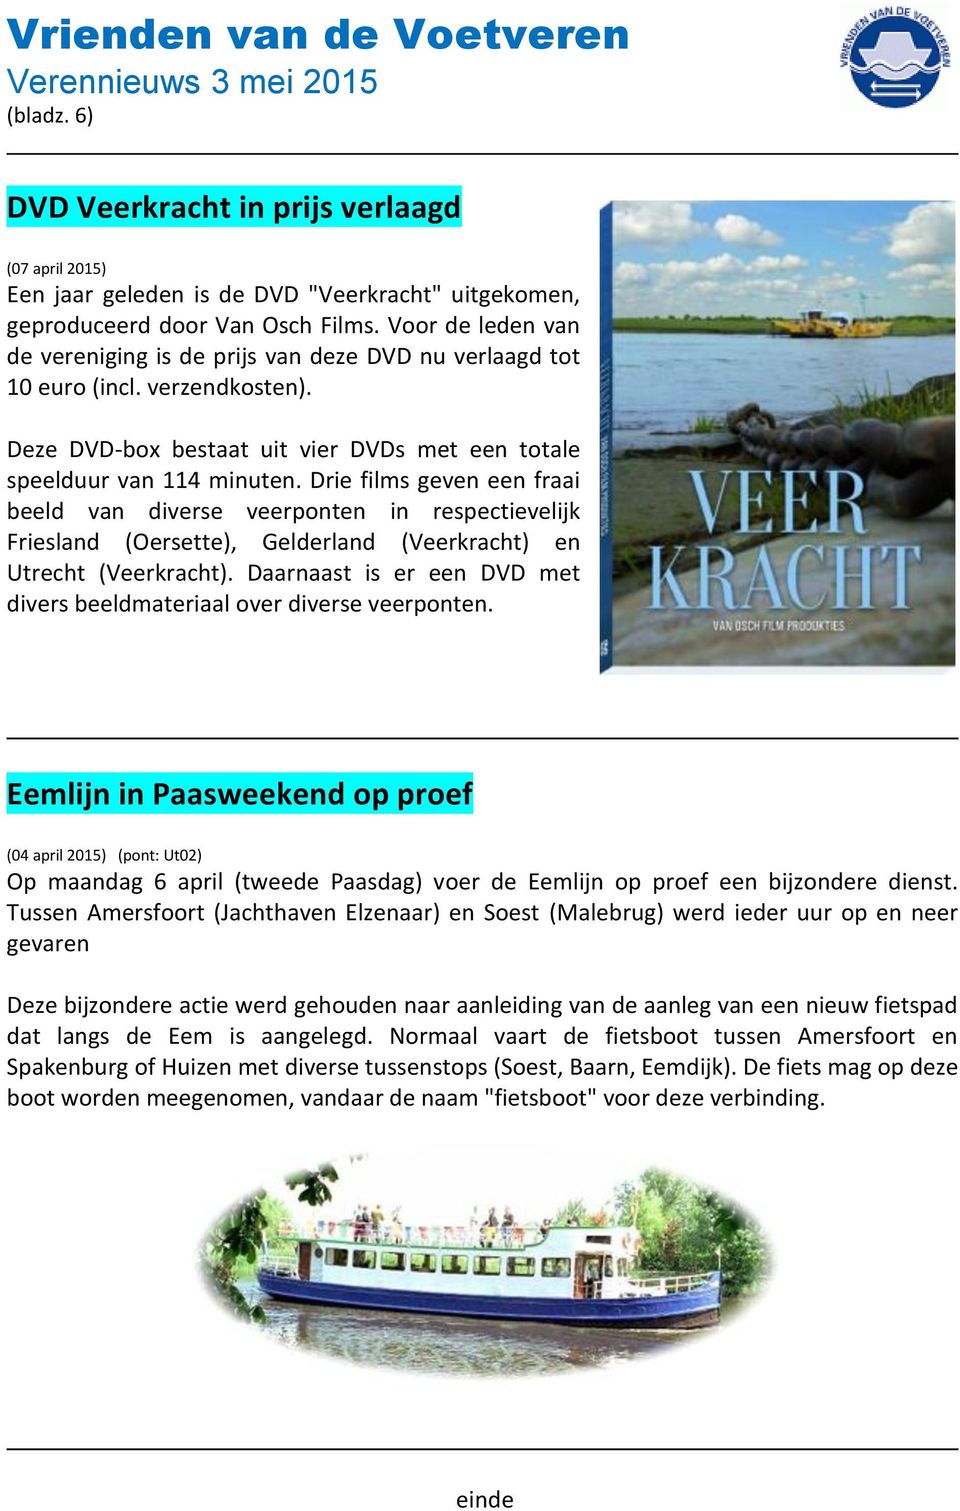 Drie films geven een fraai beeld van diverse veerponten in respectievelijk Friesland (Oersette), Gelderland (Veerkracht) en Utrecht (Veerkracht).